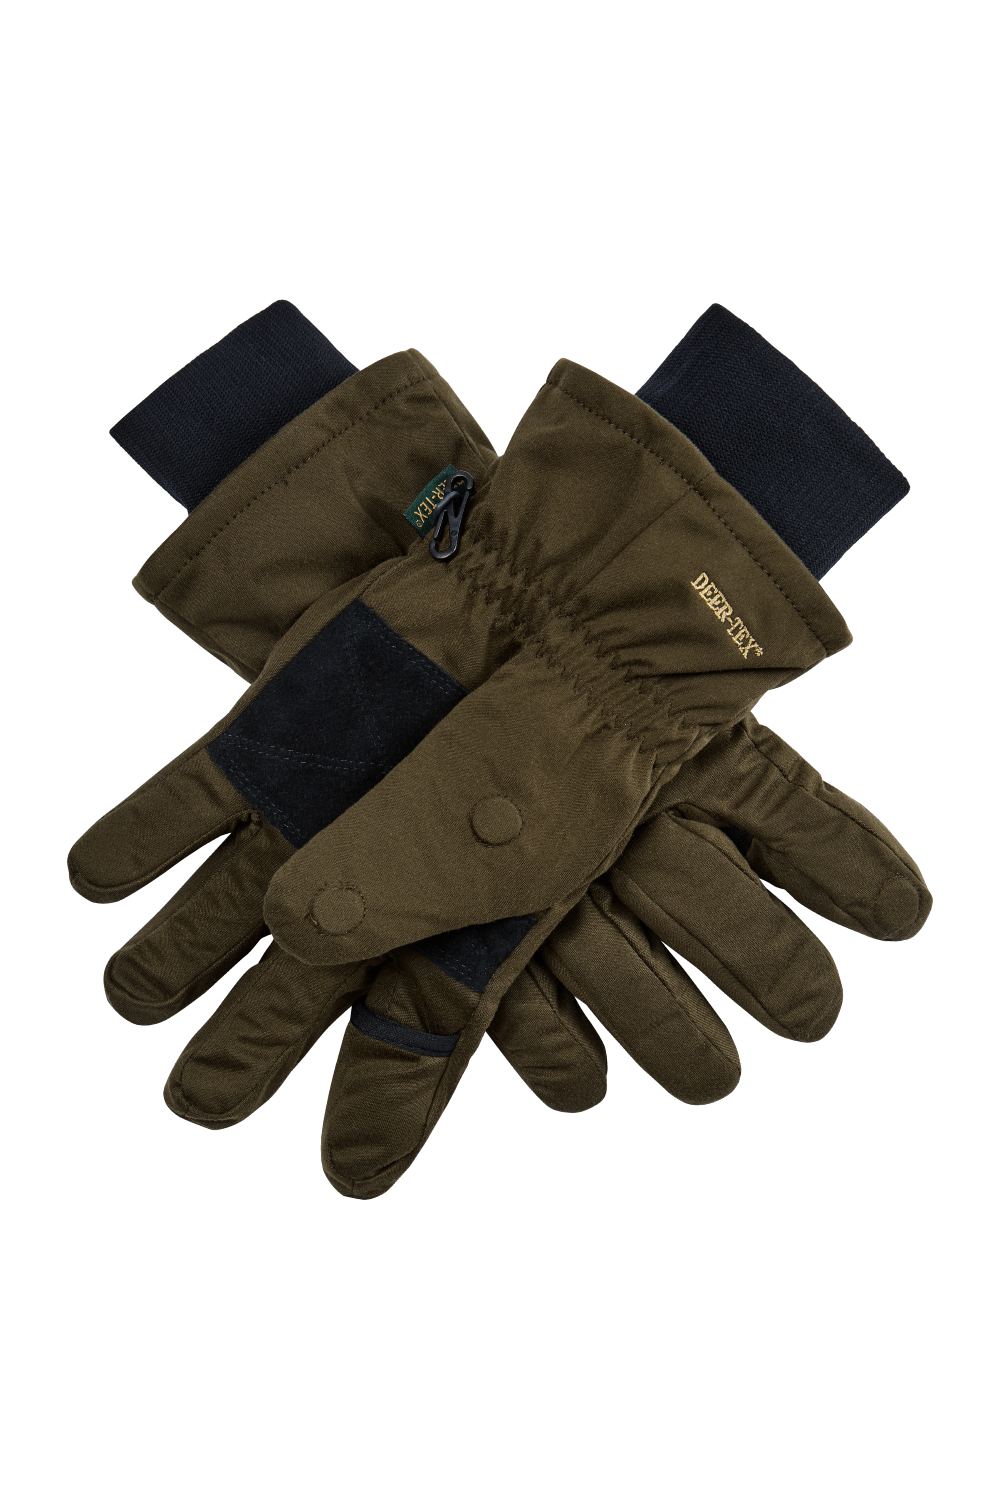 Deerhunter Excape Winter Gloves in Art Green 